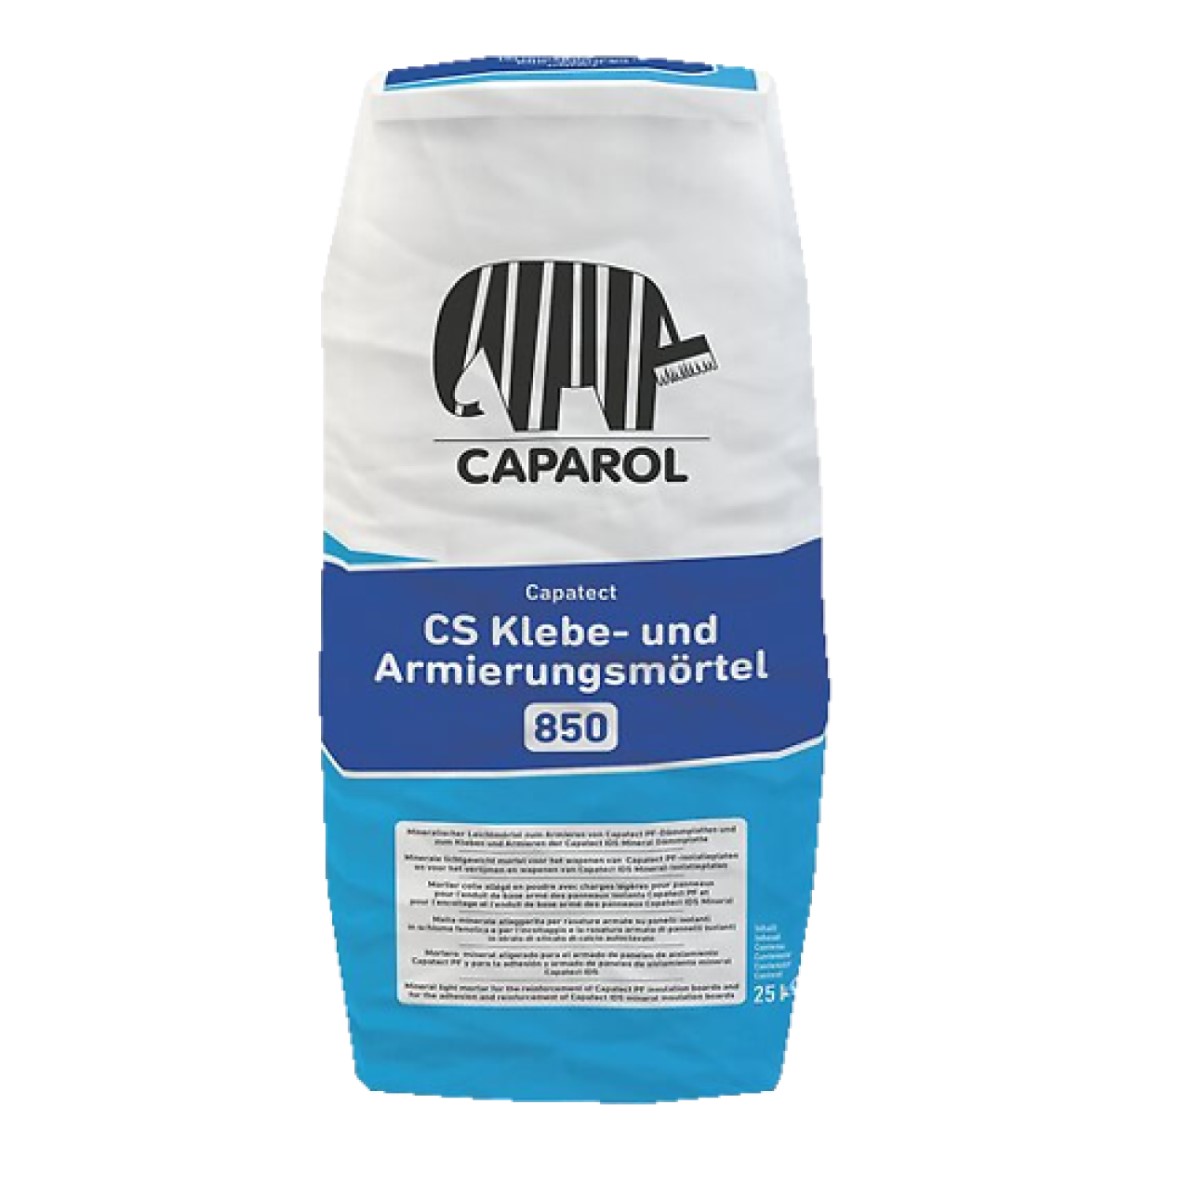 Caparol Capatect CS Klebe-und Armierungsmörtel 850 Vieglā minerālā java izolācijas plākšņu līmēšanai un armēšanai siltumizolācijai 25kg